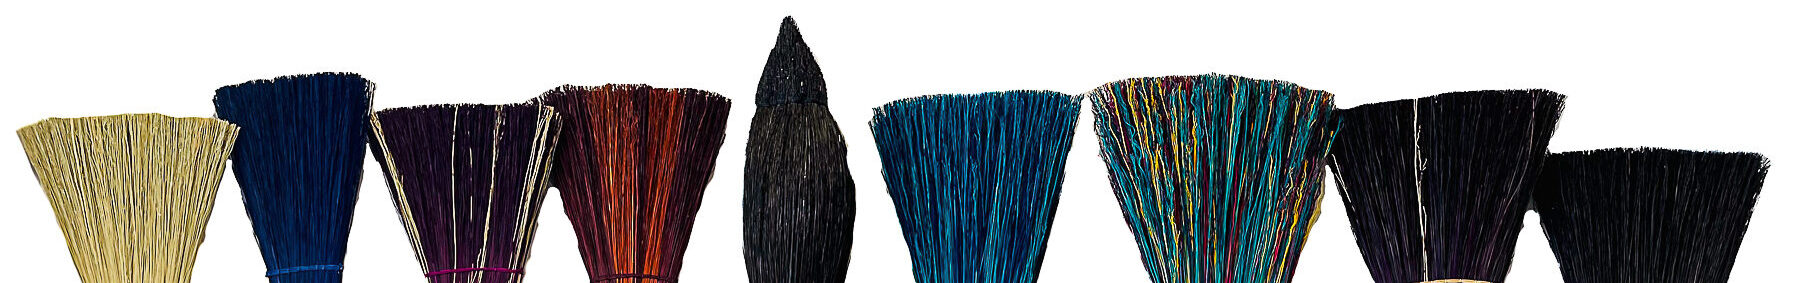 Snyder's Handmade Brooms of Saratoga | Saratoga Springs NY Handmade Brooms | Matthew Snyder Broom Maker